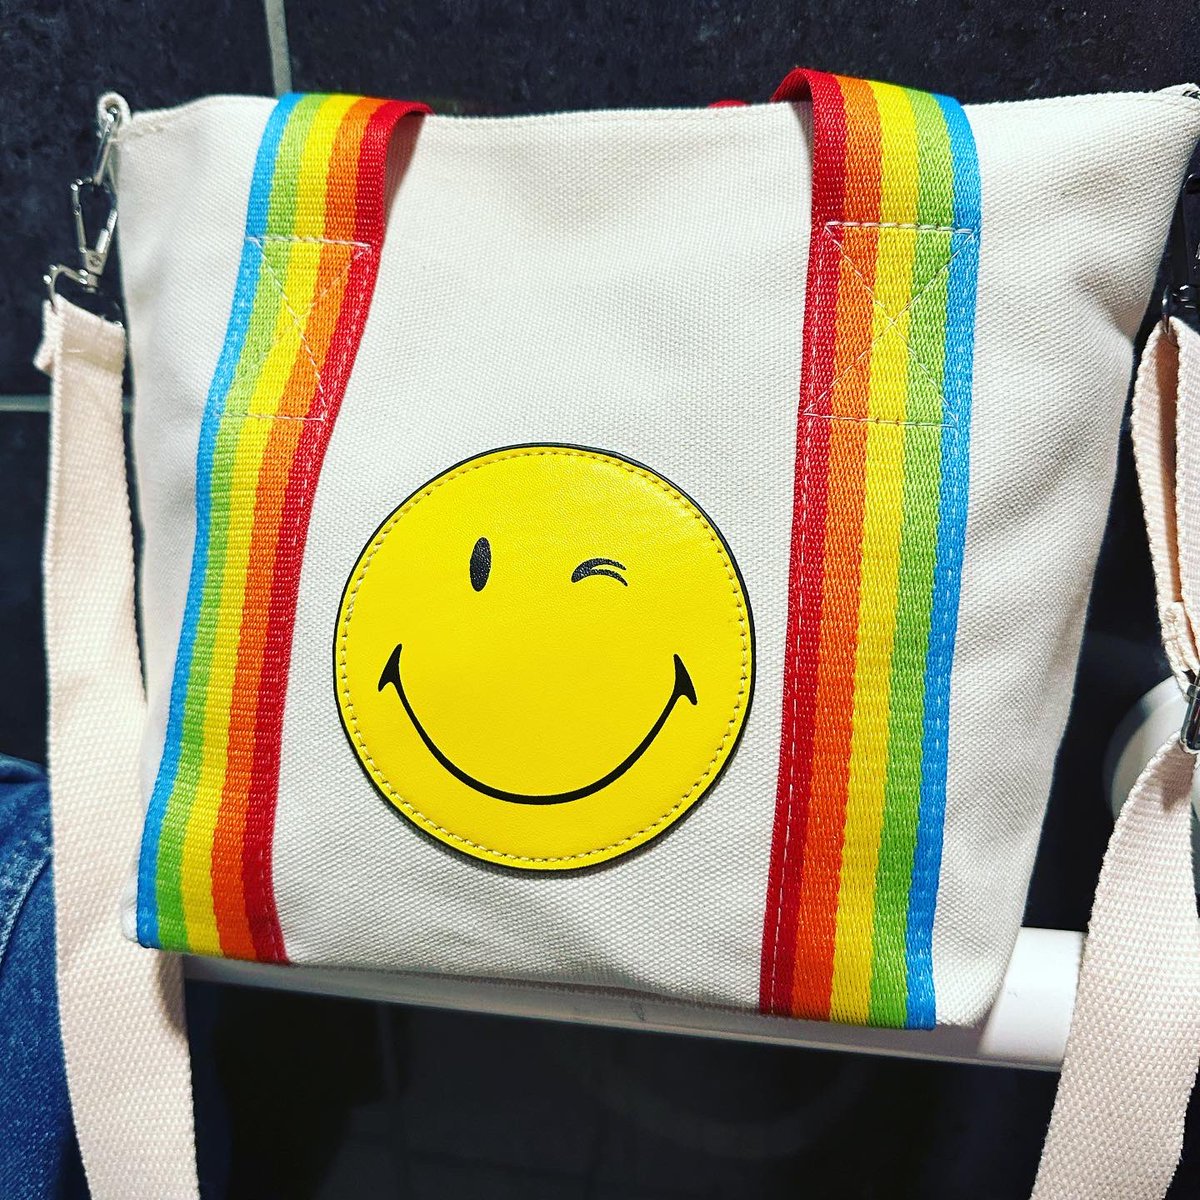 #newhandbag #rainbow #winkyface #winkyfaceemoji #emoji #makesmesmile